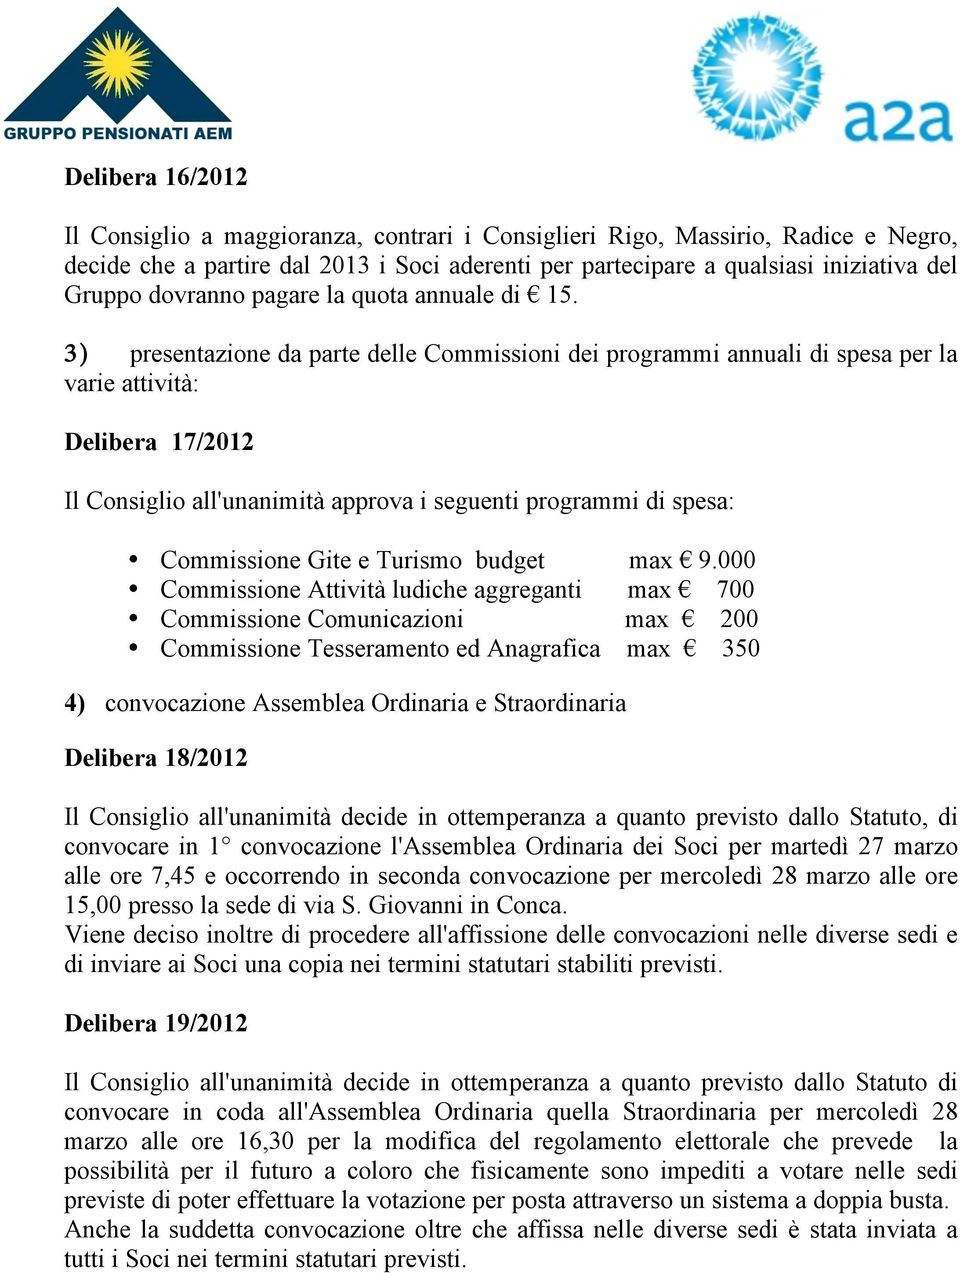 3) presentazione da parte delle Commissioni dei programmi annuali di spesa per la varie attività: Delibera 17/2012 Il Consiglio all'unanimità approva i seguenti programmi di spesa: Commissione Gite e